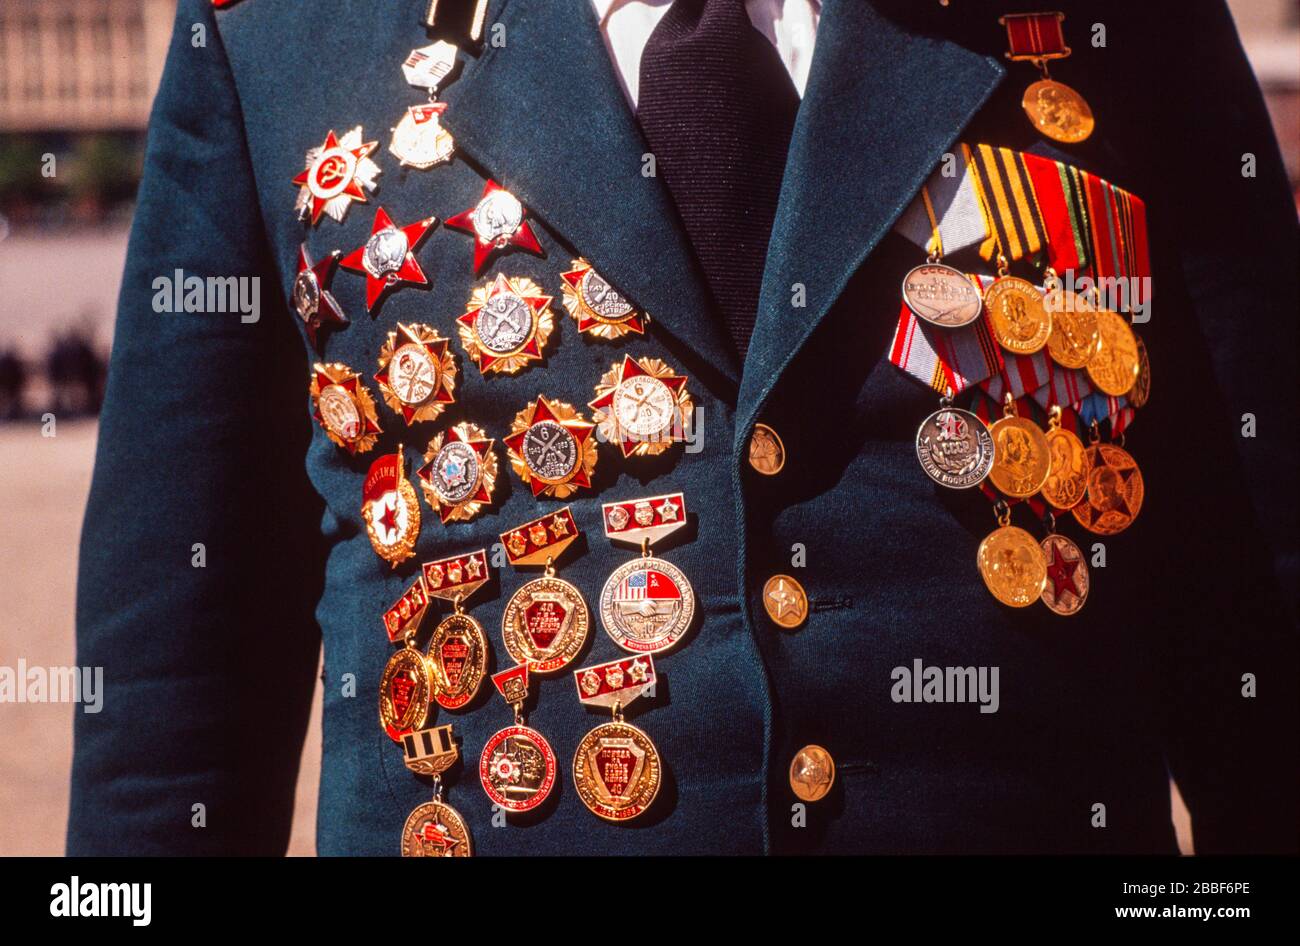 Militärs tragen ihre Uniform und medaillen am 9. Mai, dem Tag des Sieges in der Nähe des Roten Platzes, Moskau. Stockfoto